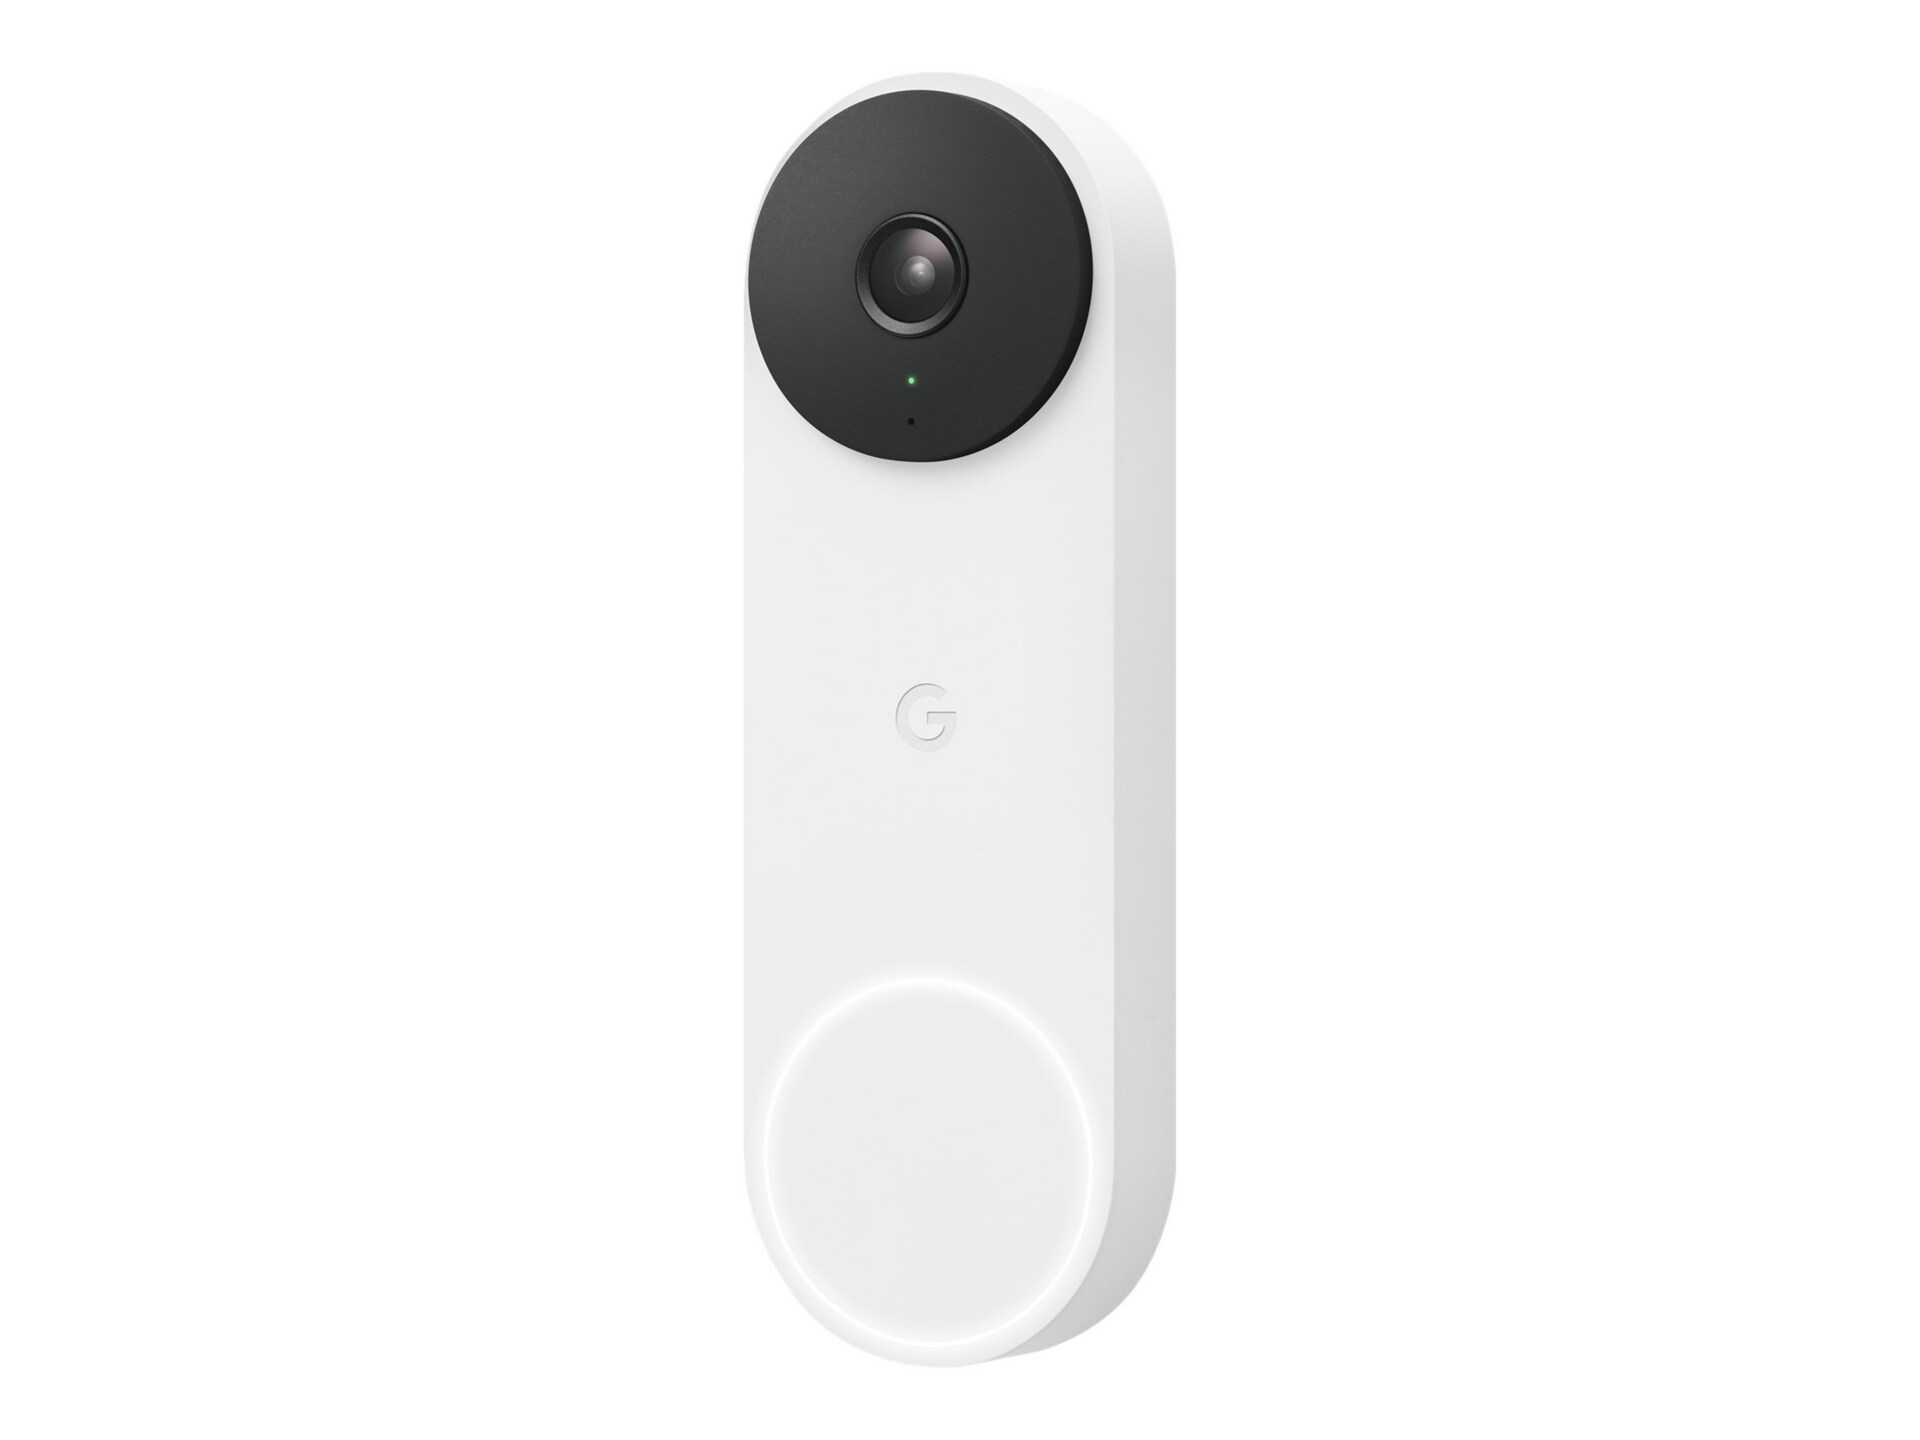 Google Nest 2nd gen - smart doorbell - wired - 802.11a/b/g/n/ac, Bluetooth